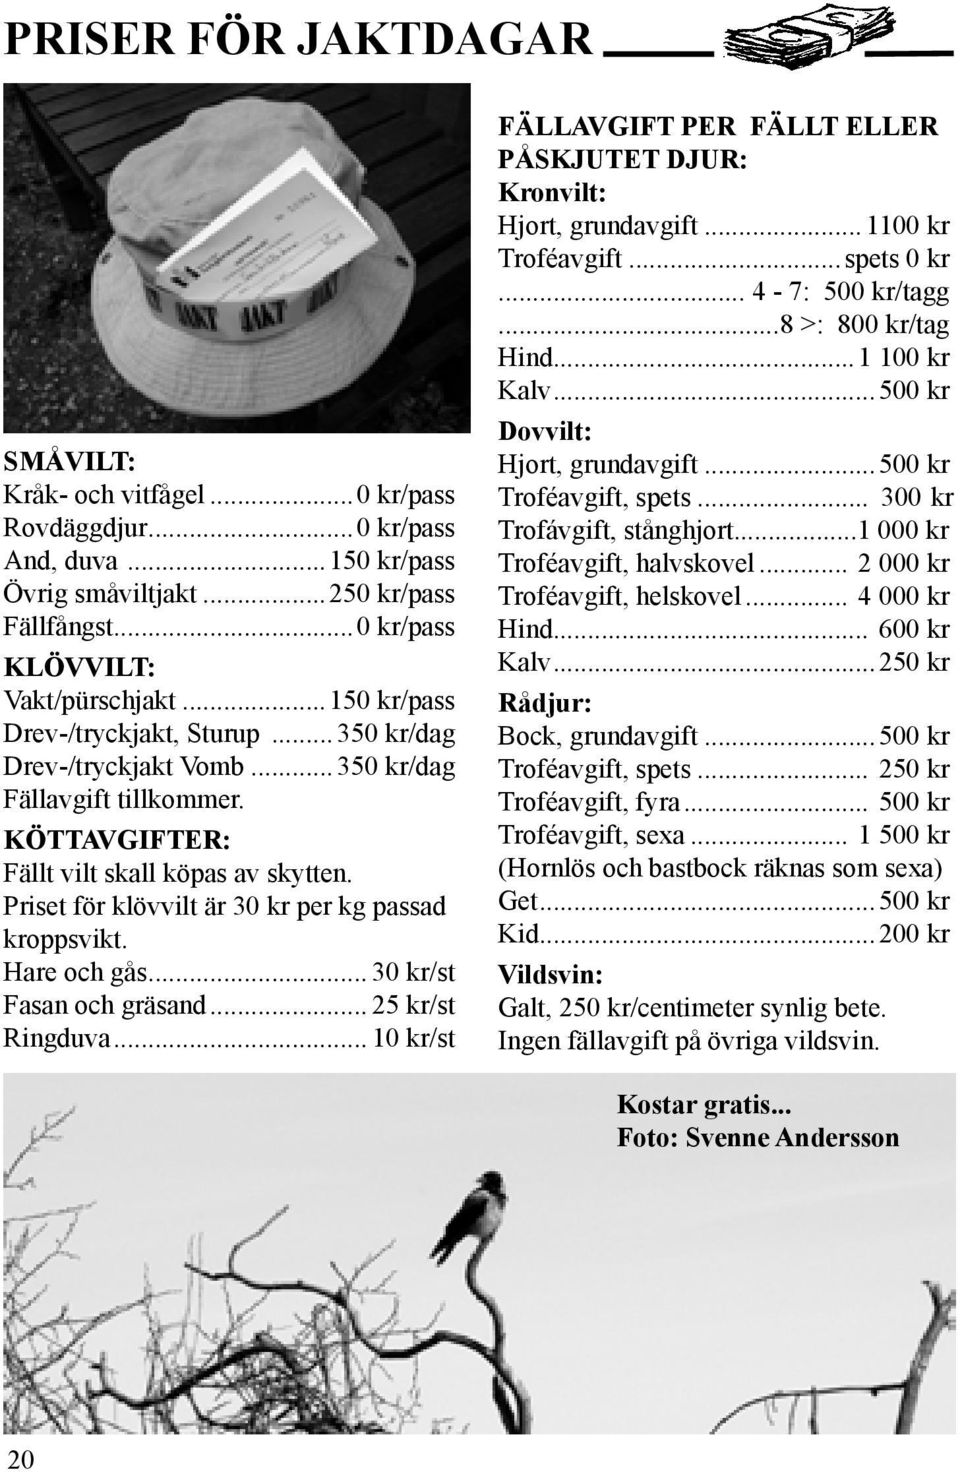 Priset för klövvilt är 30 kr per kg passad kroppsvikt. Hare och gås... 30 kr/st Fasan och gräsand... 25 kr/st Ringduva.